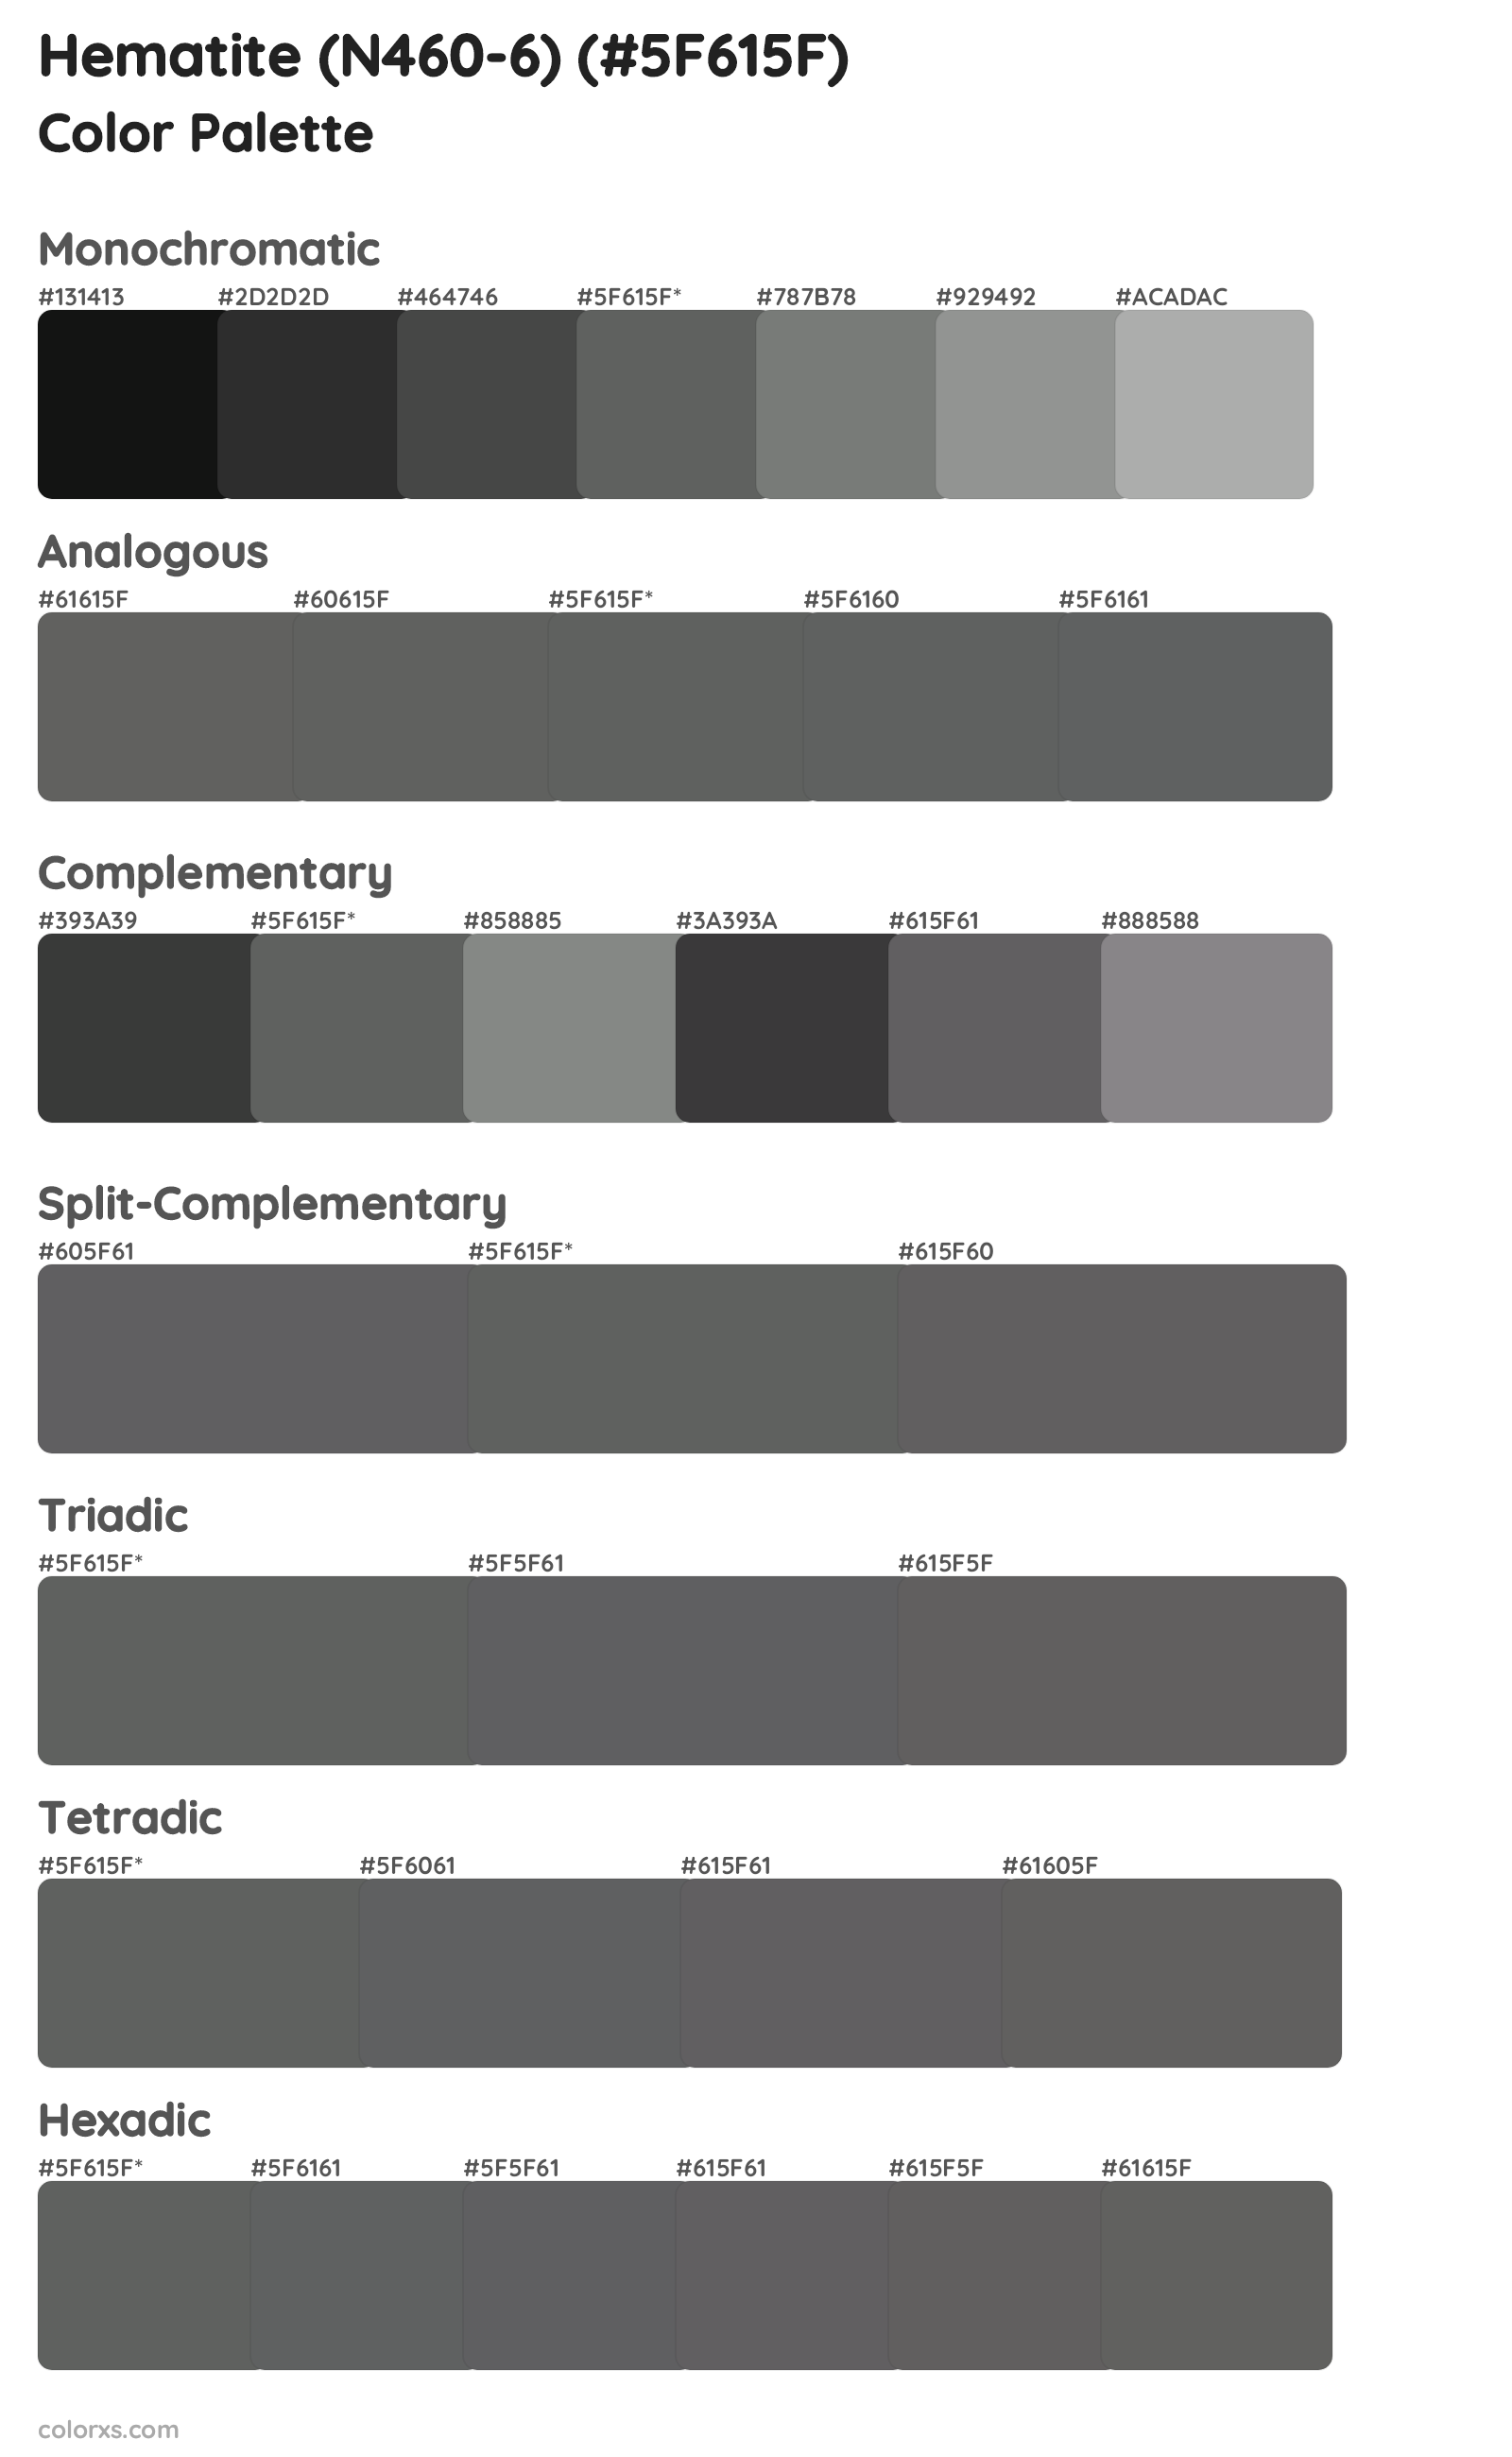 Hematite (N460-6) Color Scheme Palettes